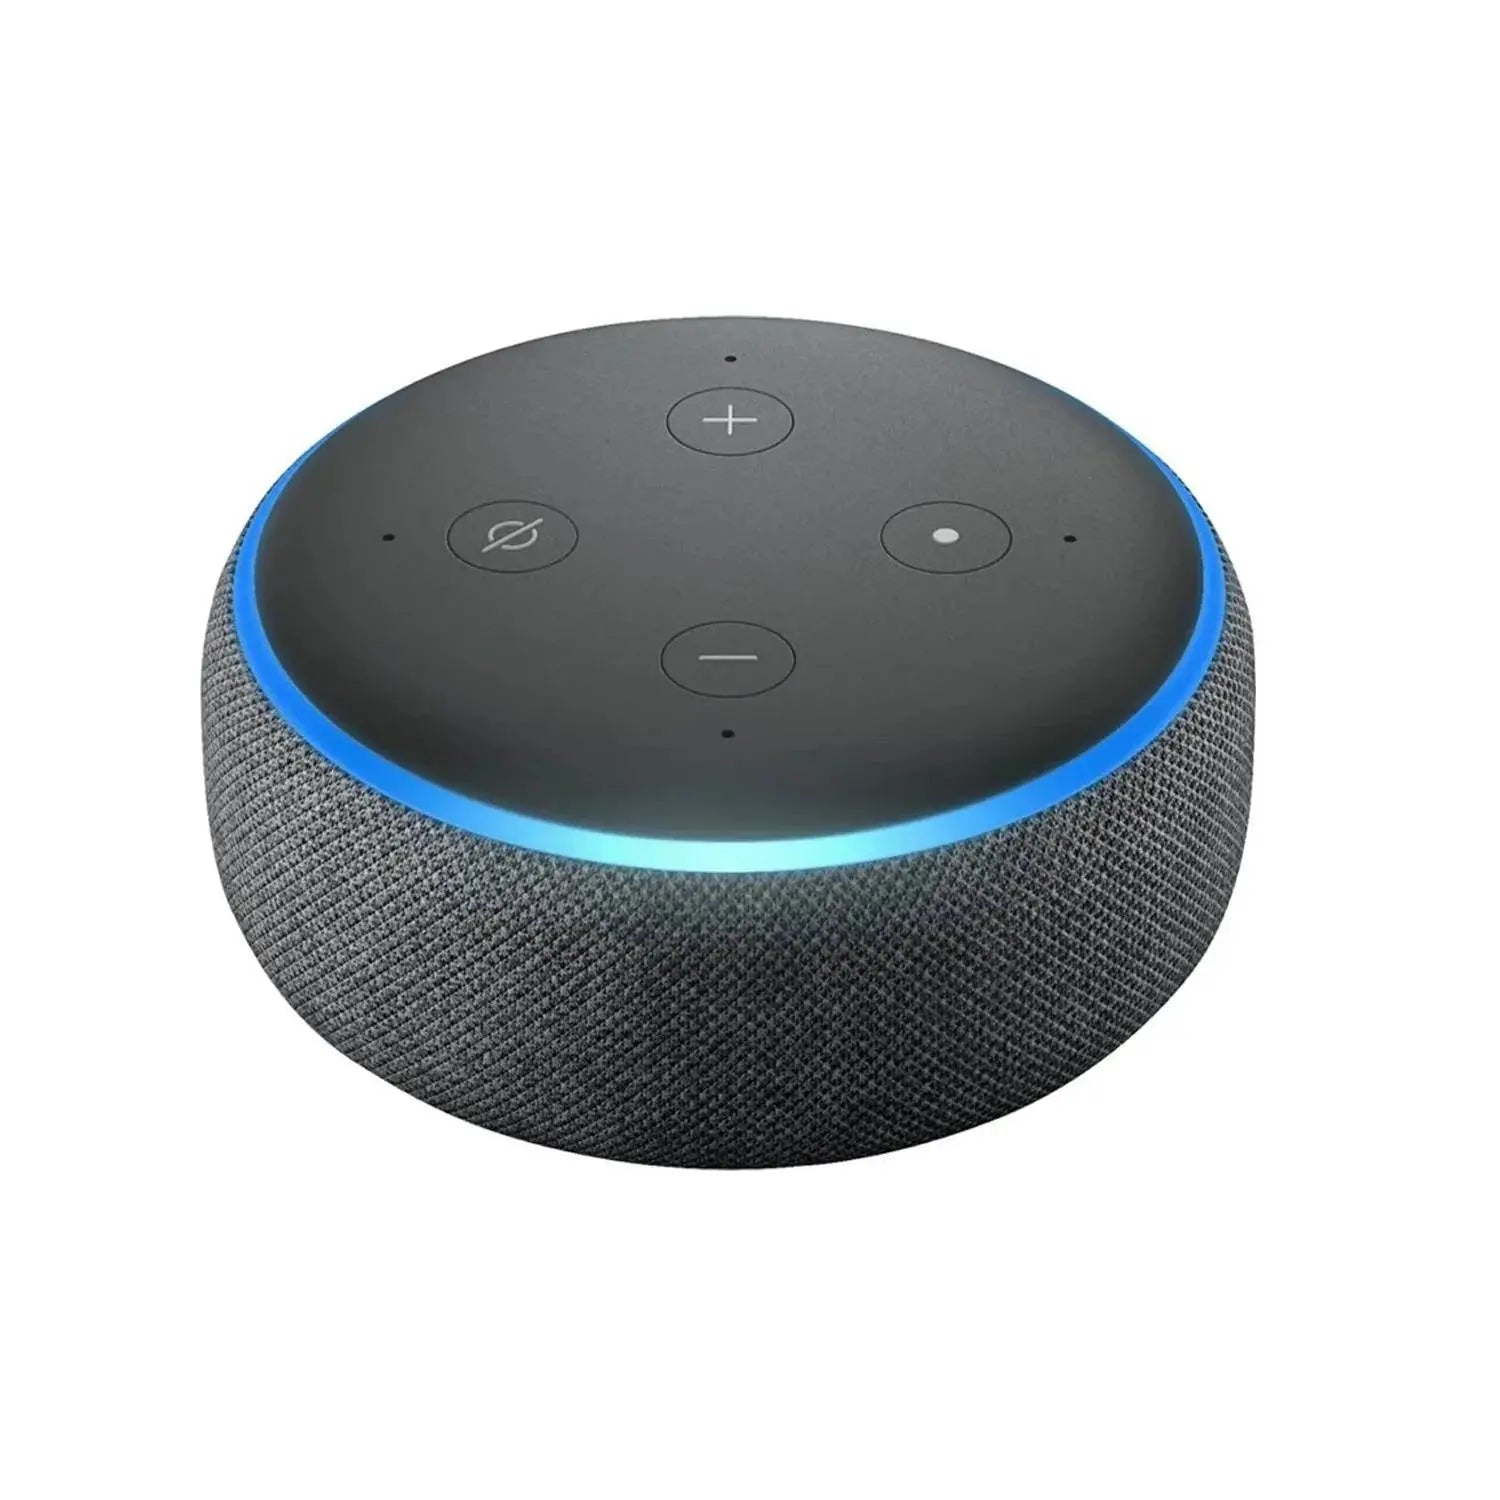 Parlante Inteligente Amazon Echo Dot 3ra Generación Negro